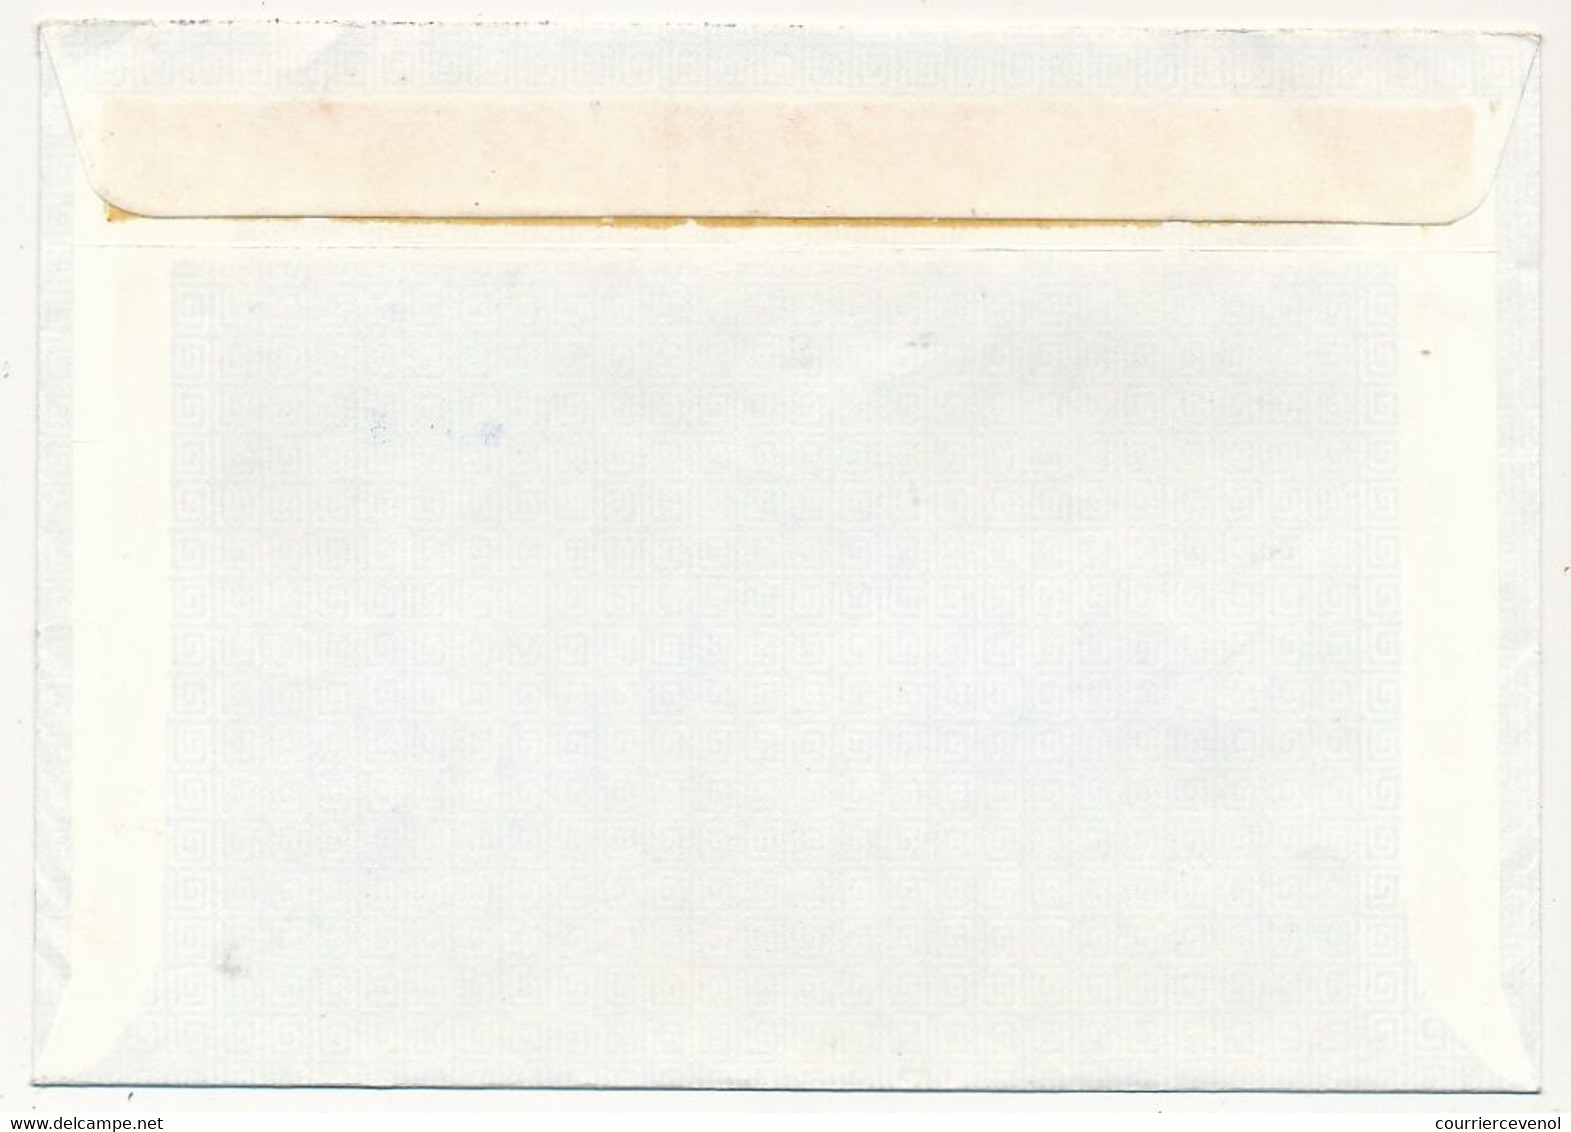 AUTRICHE - Enveloppe Affr Composé XII° Jeux Olympiques - Recommandée De 6840 Götzis - 7/4/1975 - Brieven En Documenten